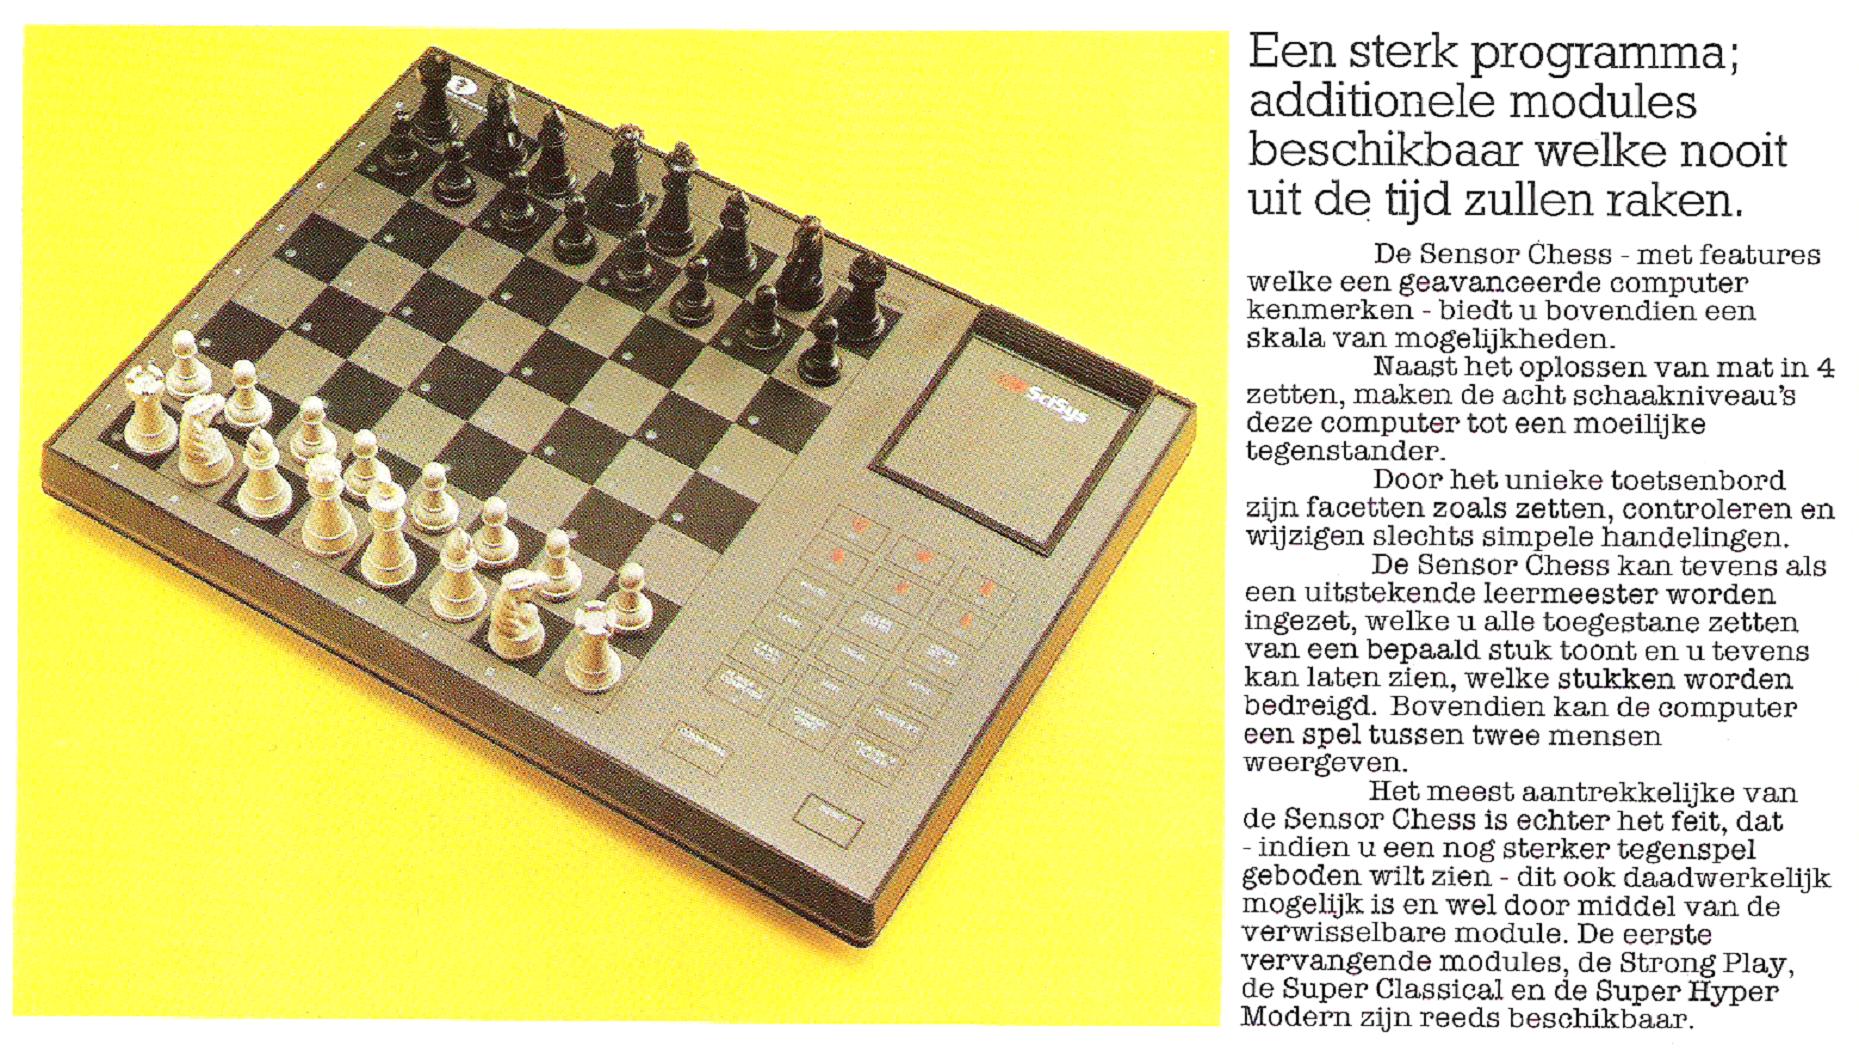 SciSys Sensor Chess (1981/82) De geavanceerde schaakcomputer met uitwisselbare modules De schaakcomputer die jarenlang een topper blijft SciSys brochure (1981/82) SciSys Sensor Chess (1981/82) 8